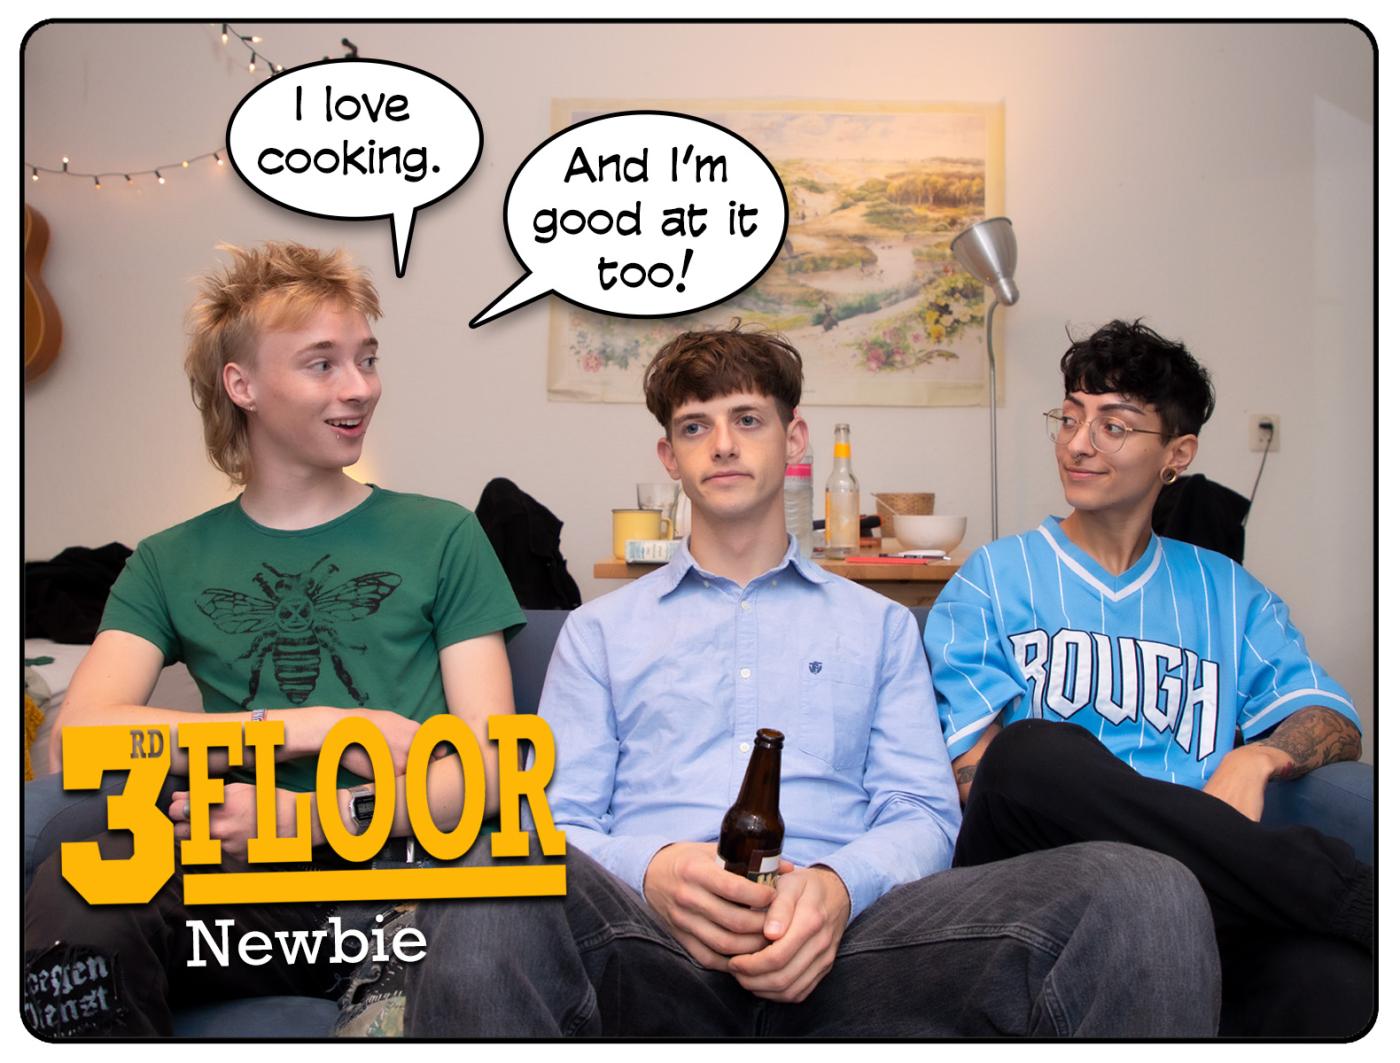 3rd Floor: Newbie